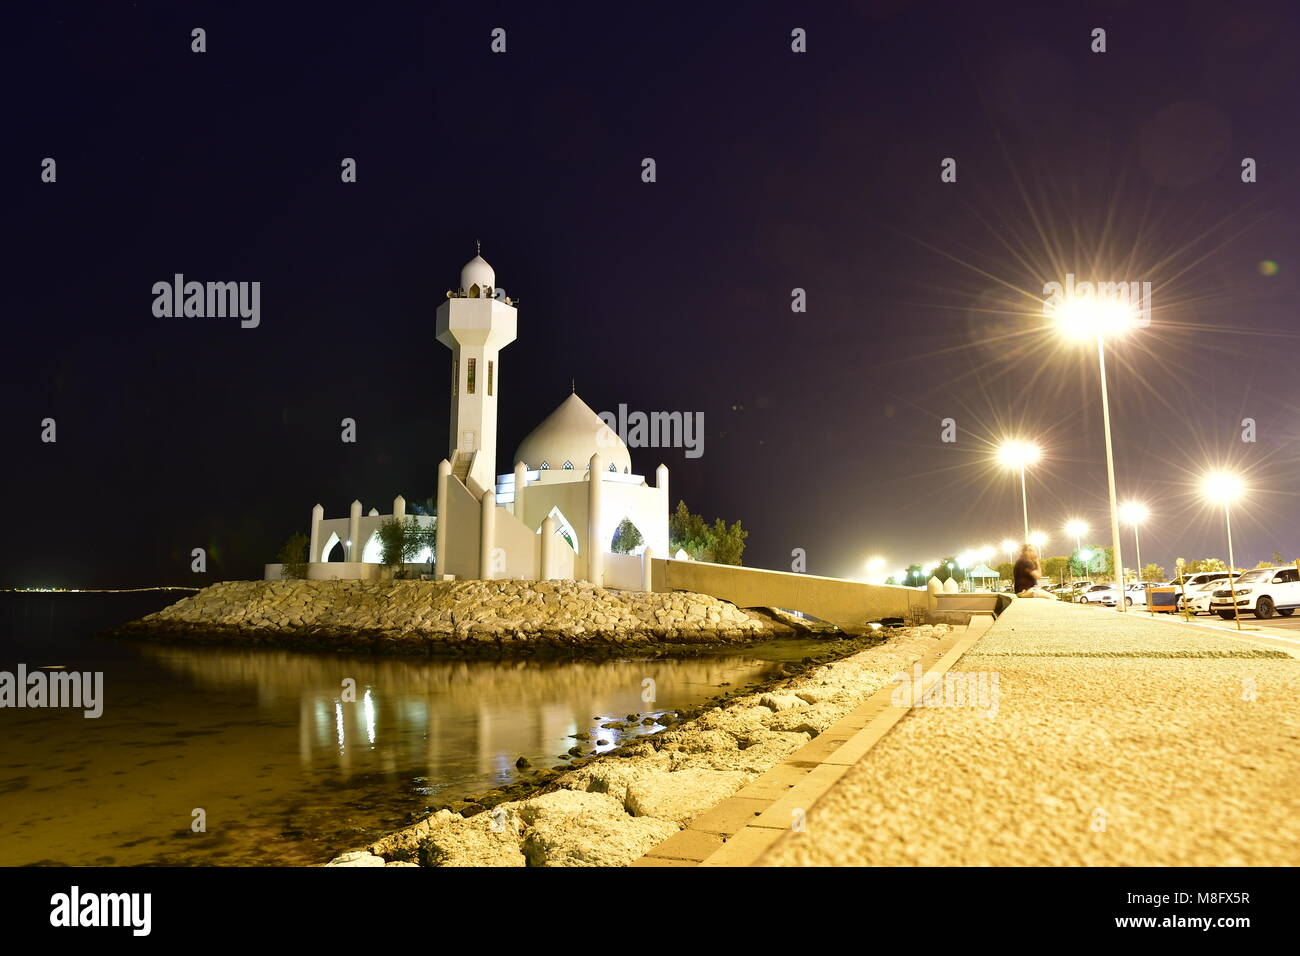 Architettura moderna sulla moschea si trova di fronte alla spiaggia in Arabia Saudita Foto Stock